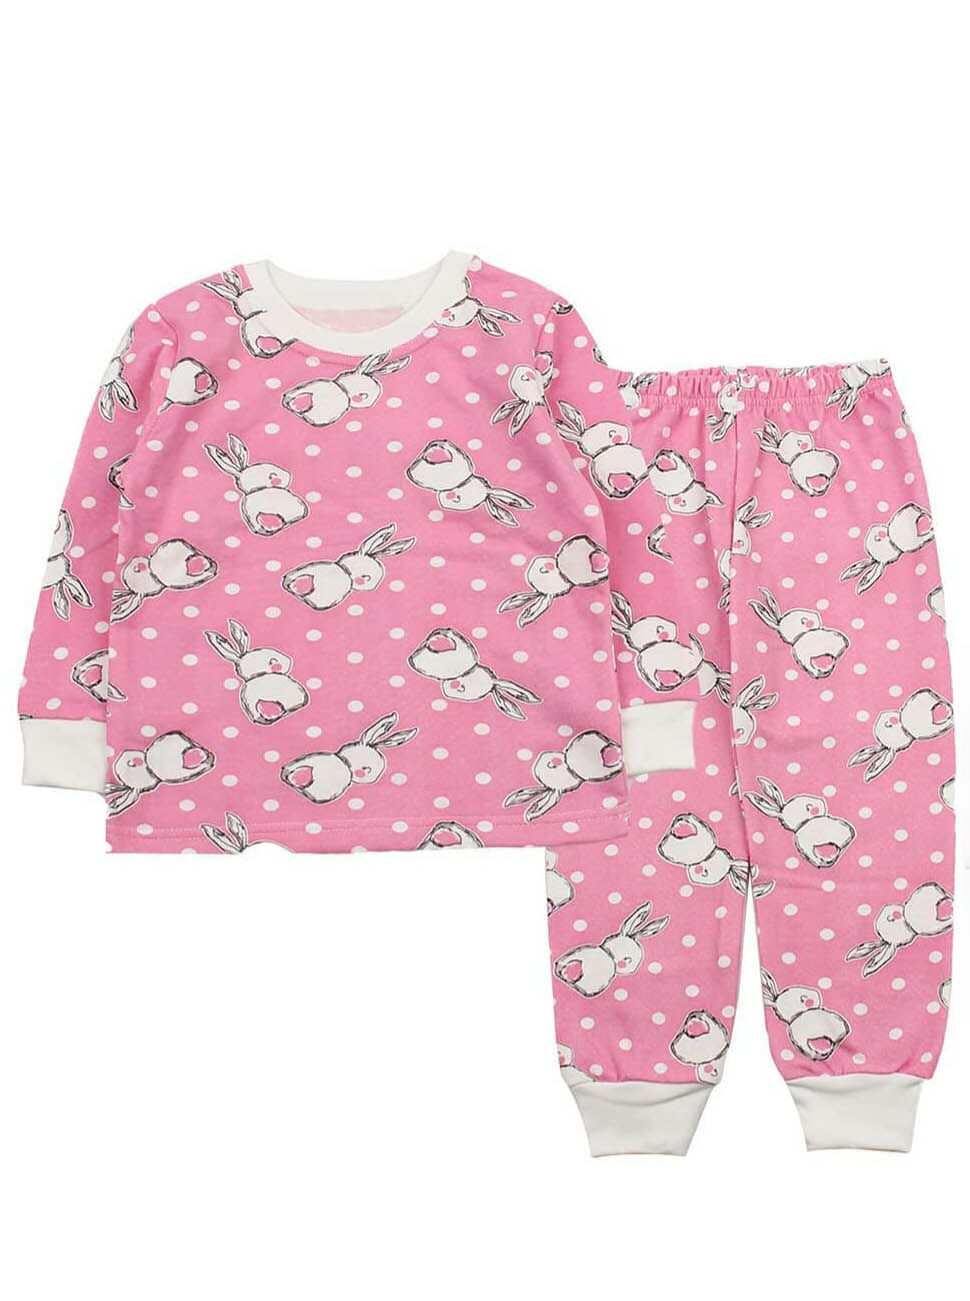 Утепленная пижама для девочки Фламинго Зайчики розовая 329-310 - цена